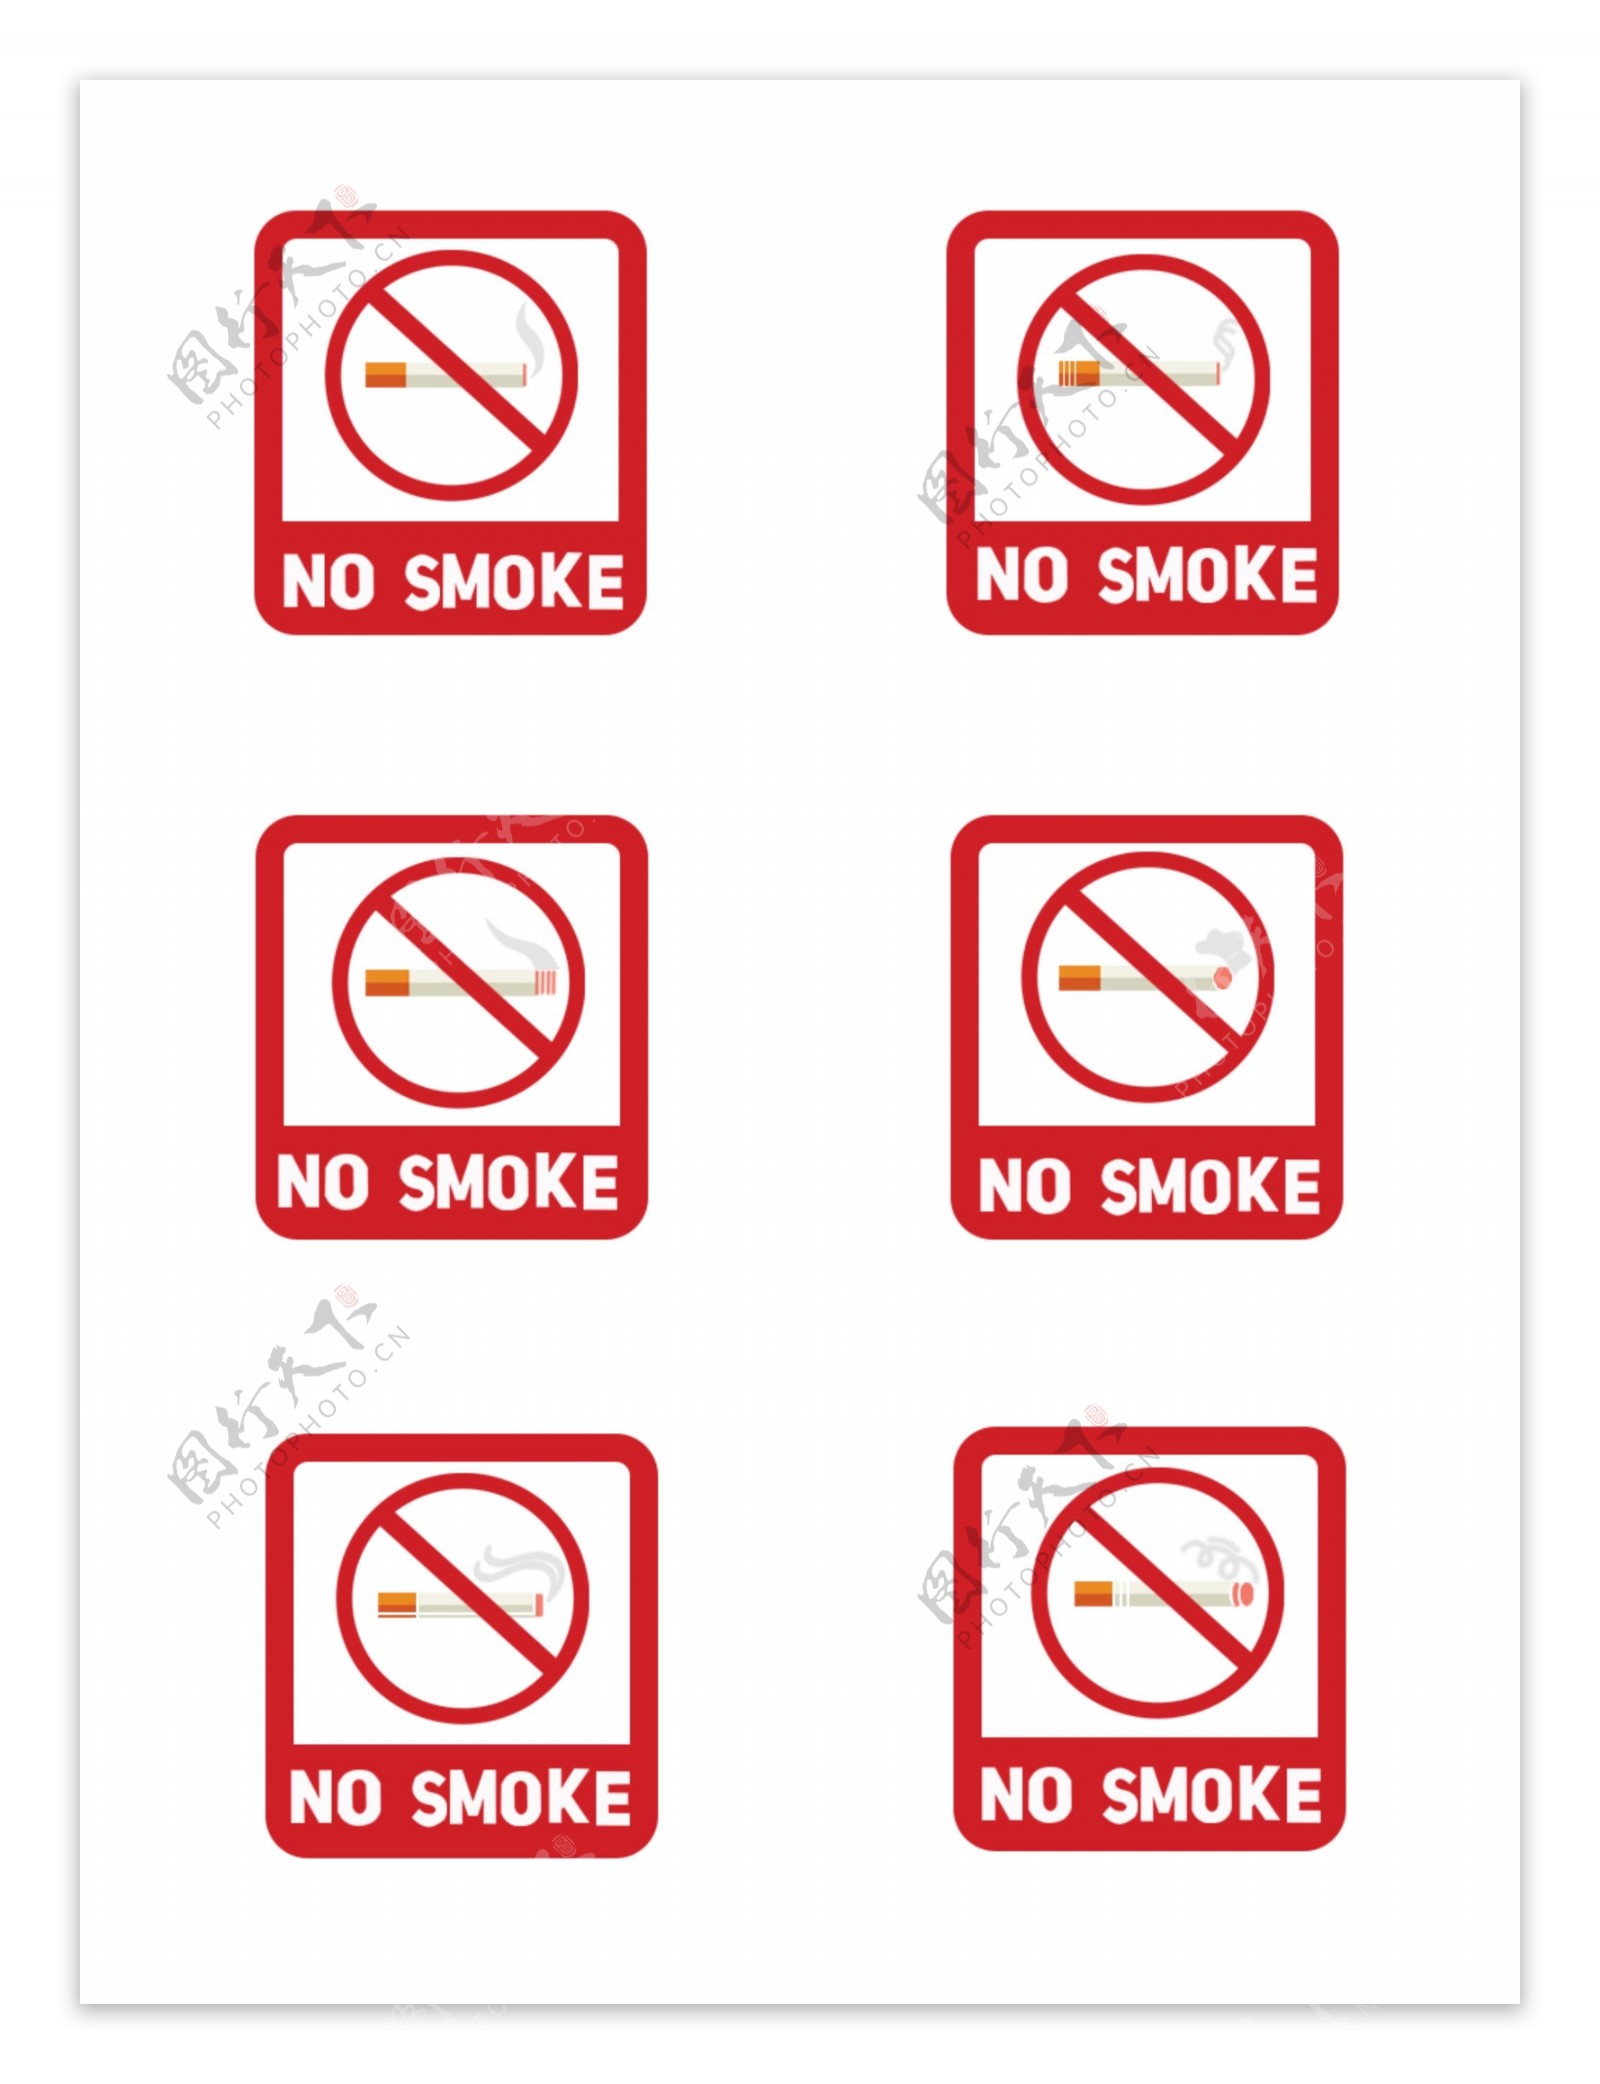 公共场所禁烟标志图案元素